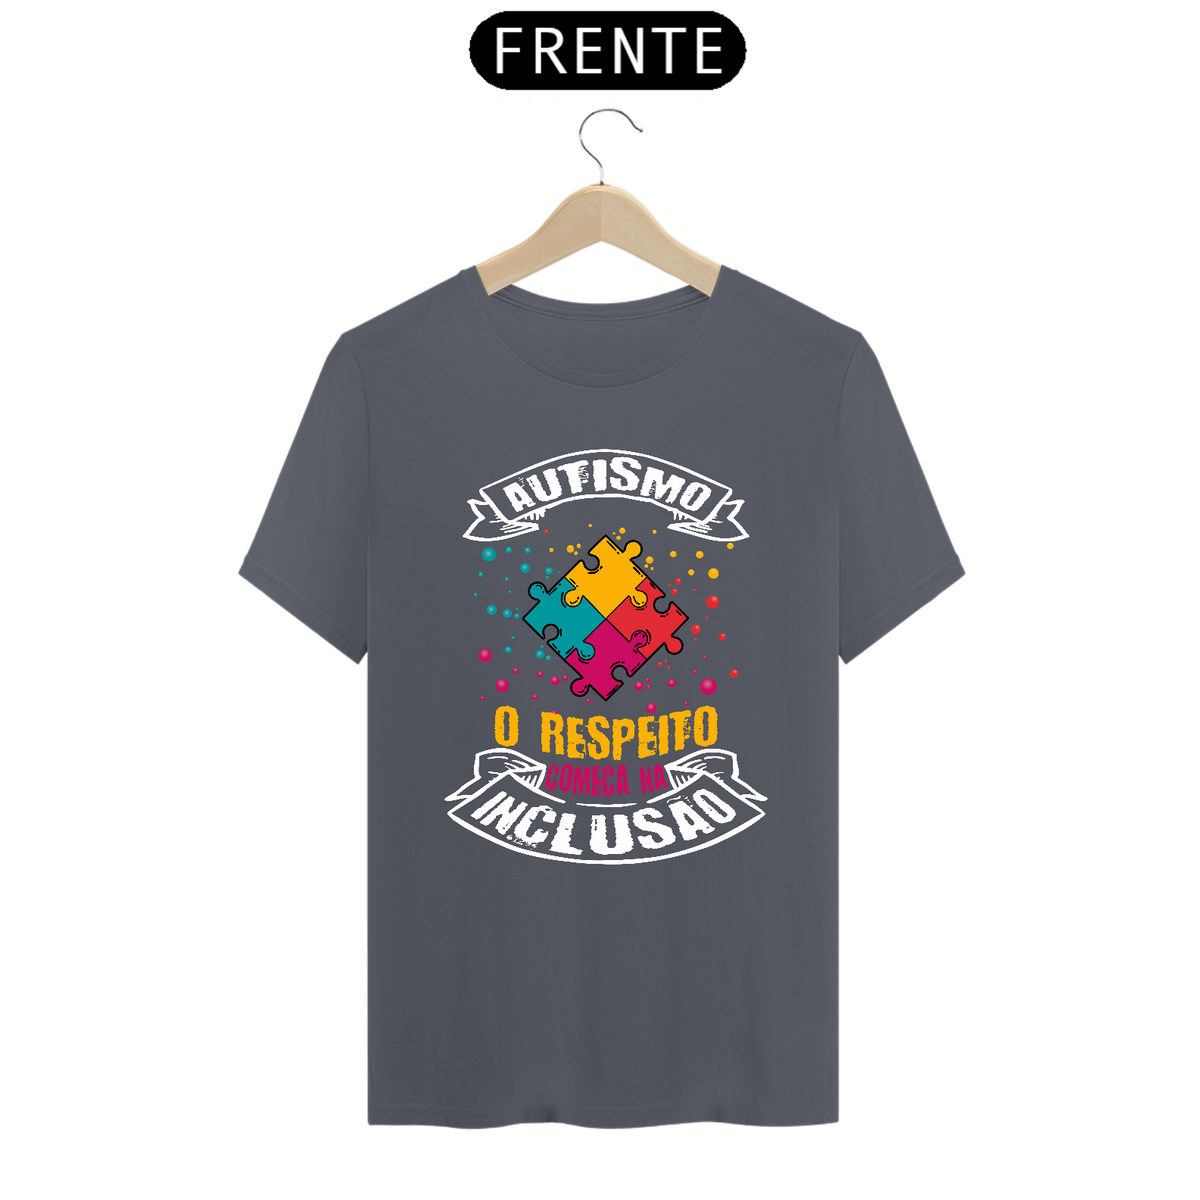 Nome do produto: T-shirt - autismo (Autismo, o respeito começa na inclusão)